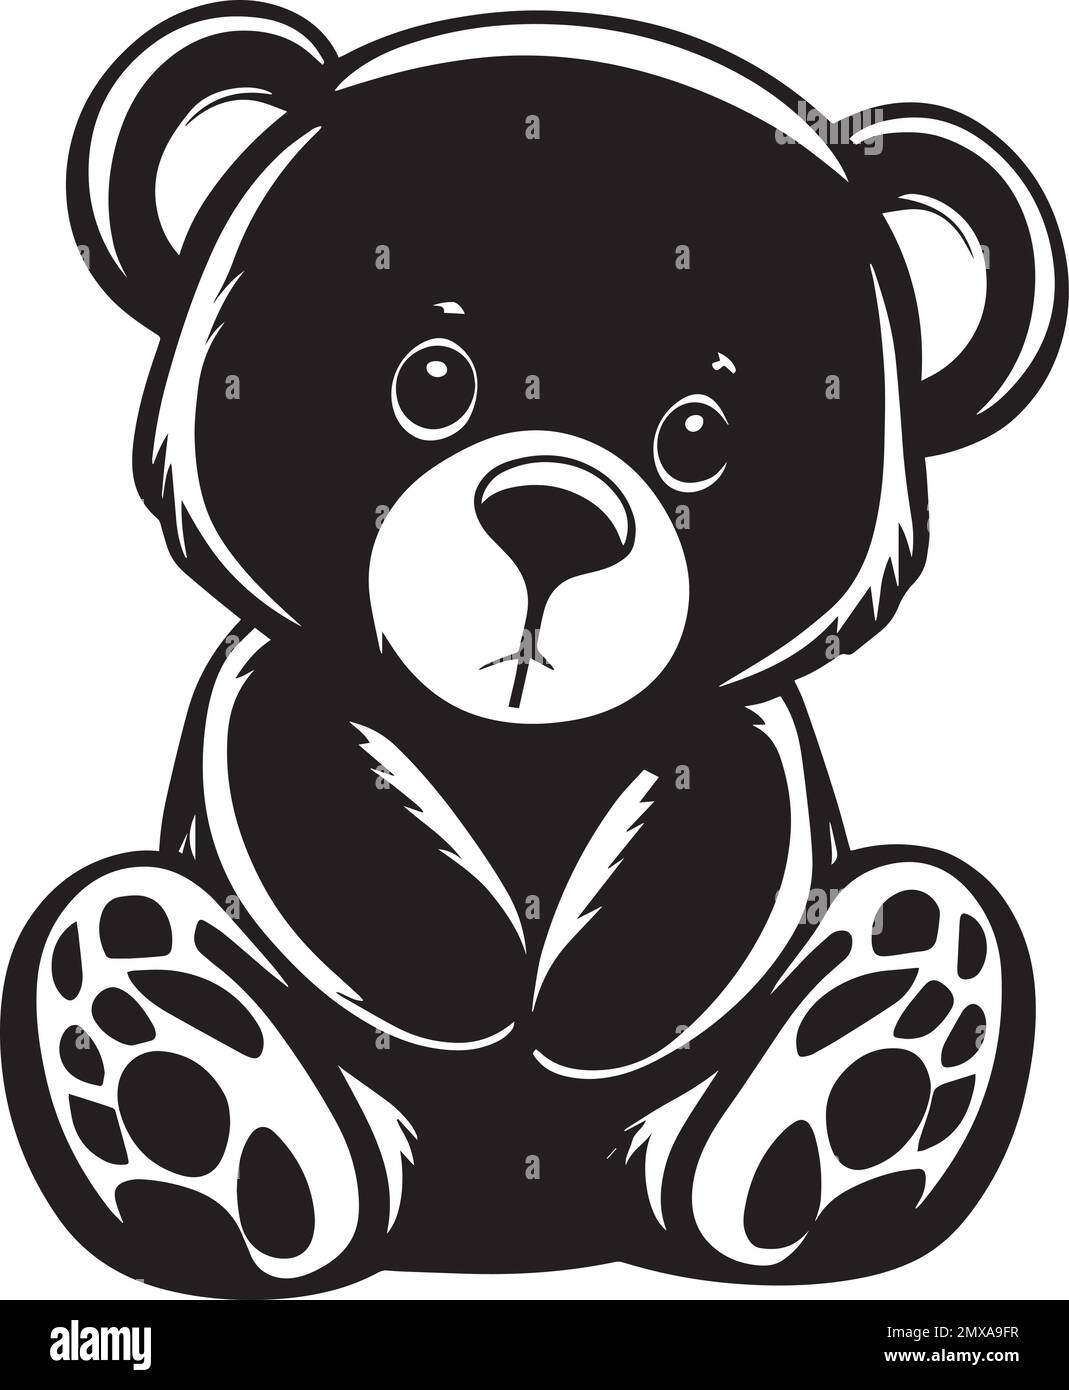 Joli logo monochrome en forme d'ours en peluche Illustration de Vecteur